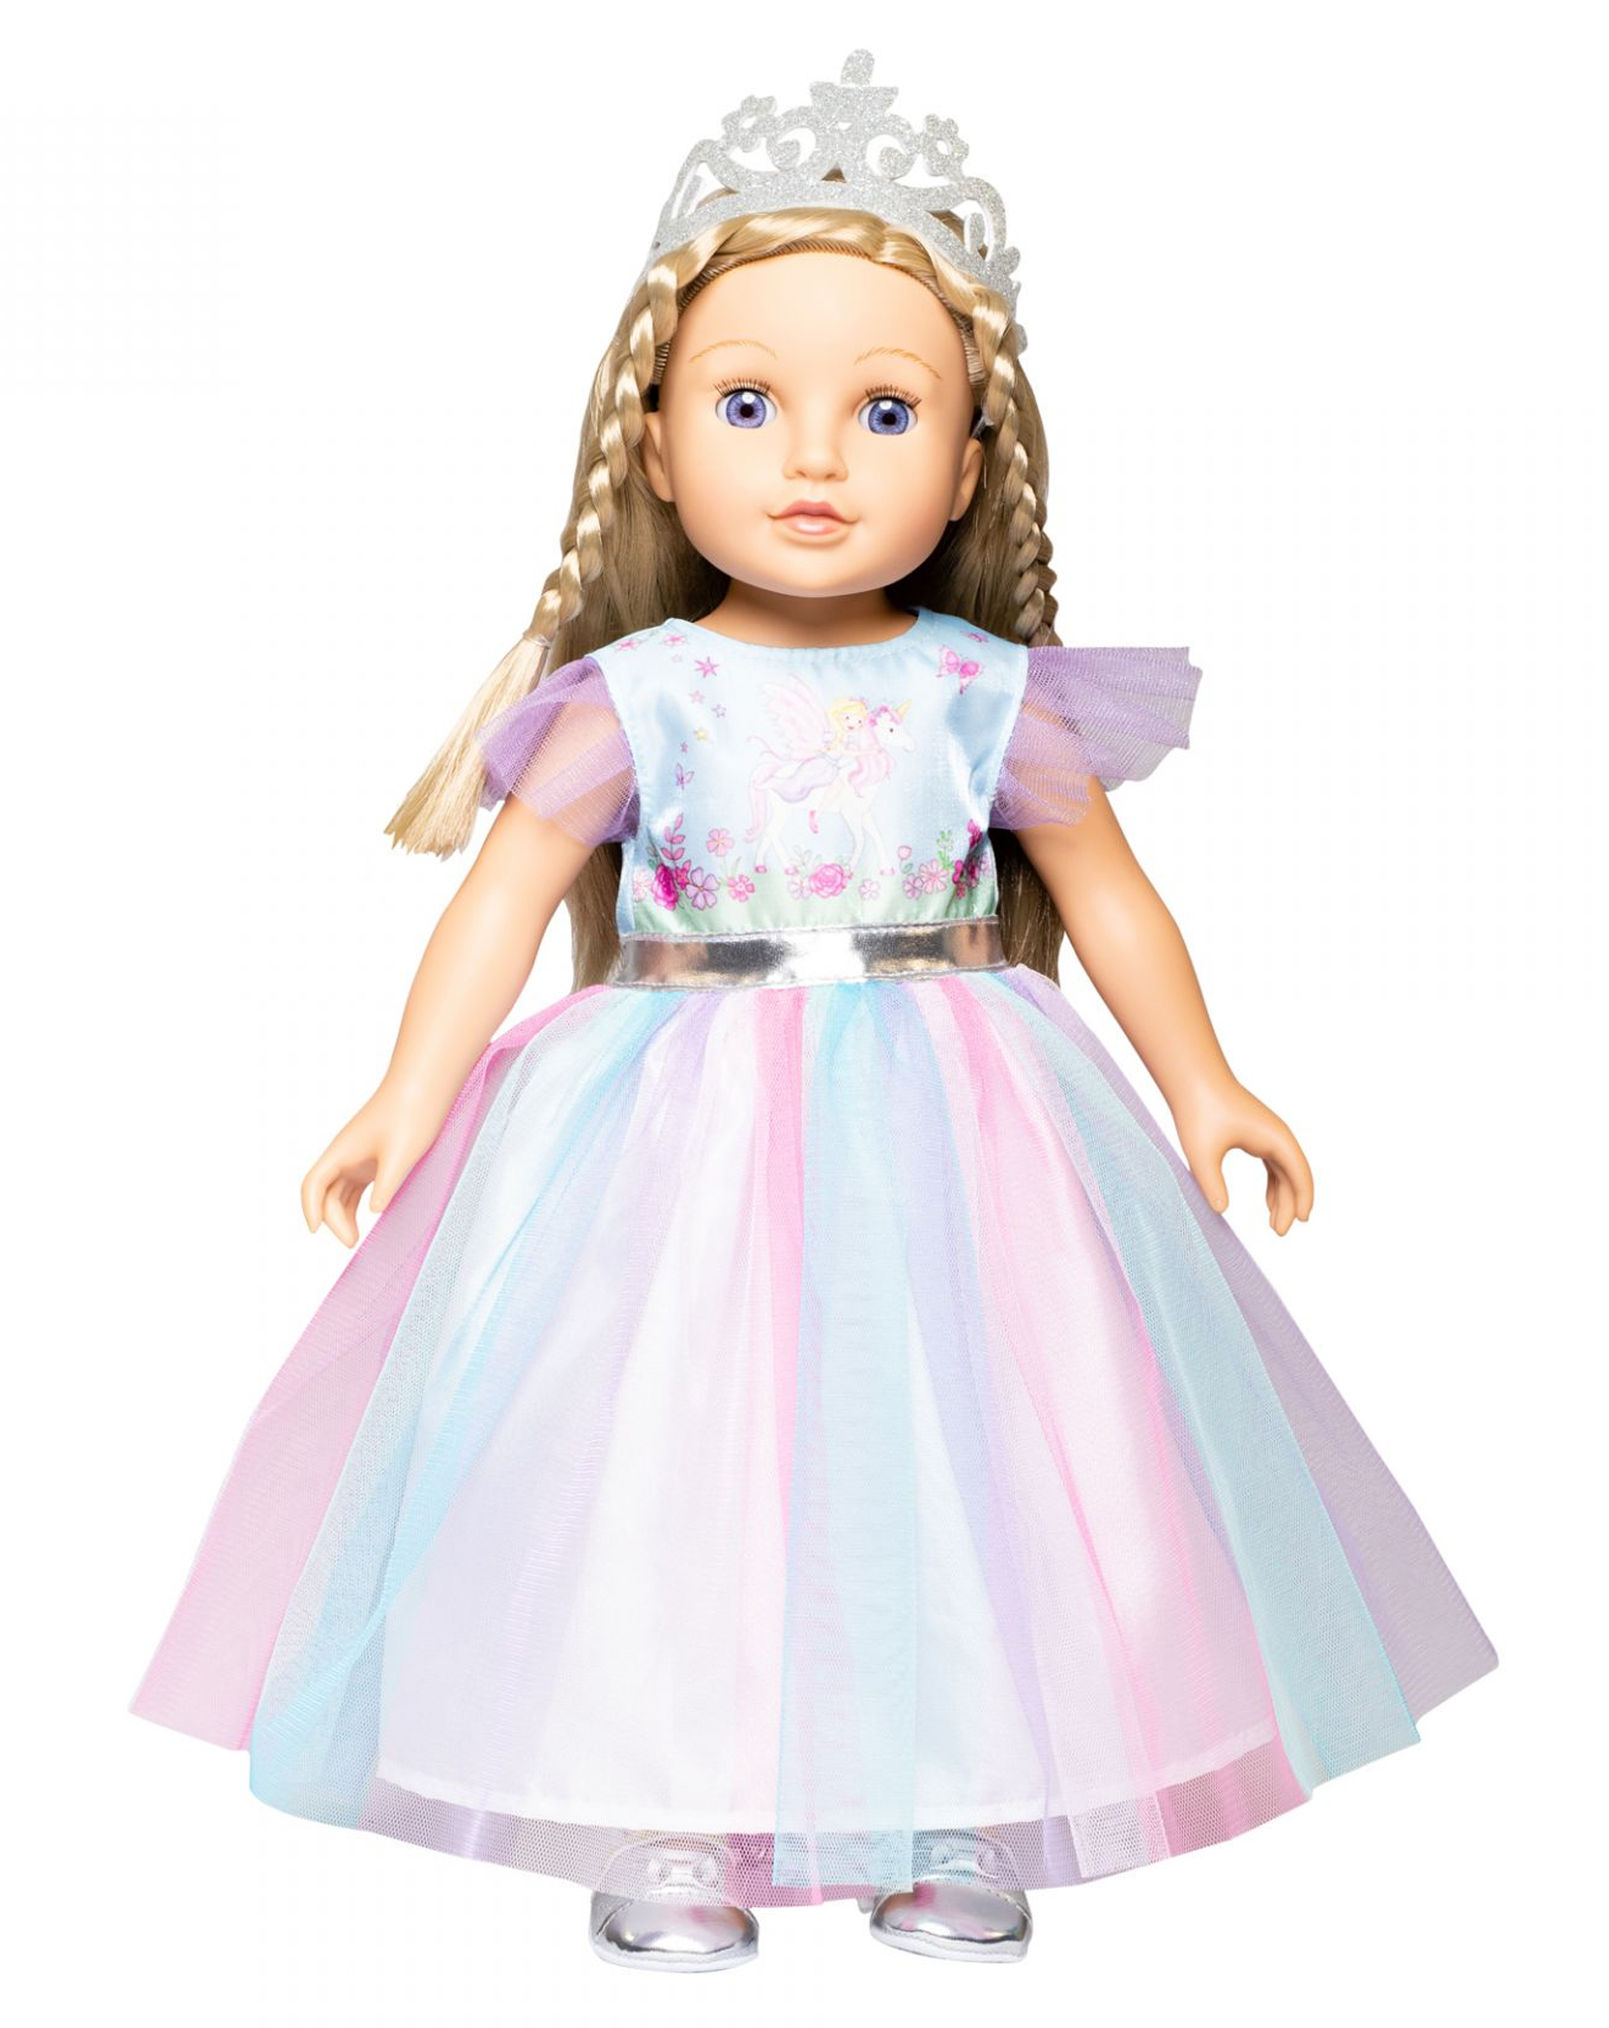 Puppen-Kleid FEE & EINHORN 28-35 cm 2-teilig kaufen